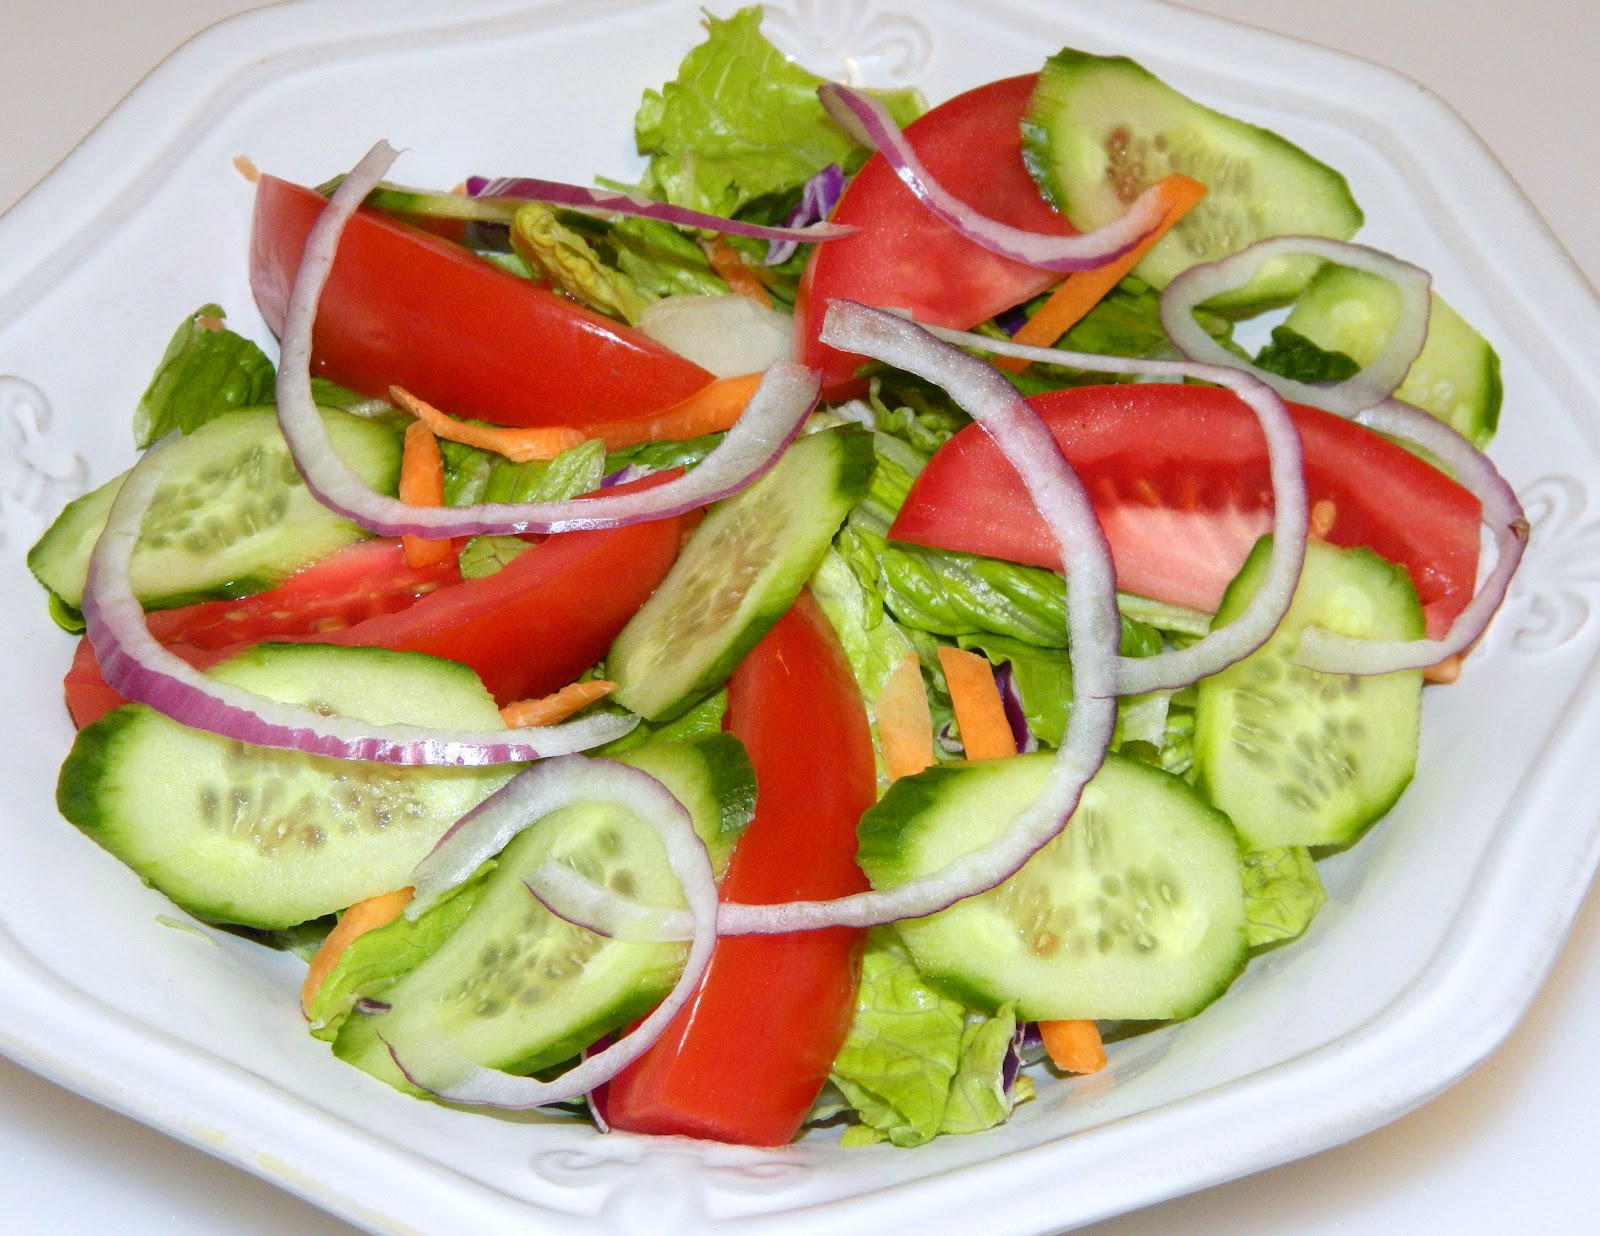 salad mixed greens